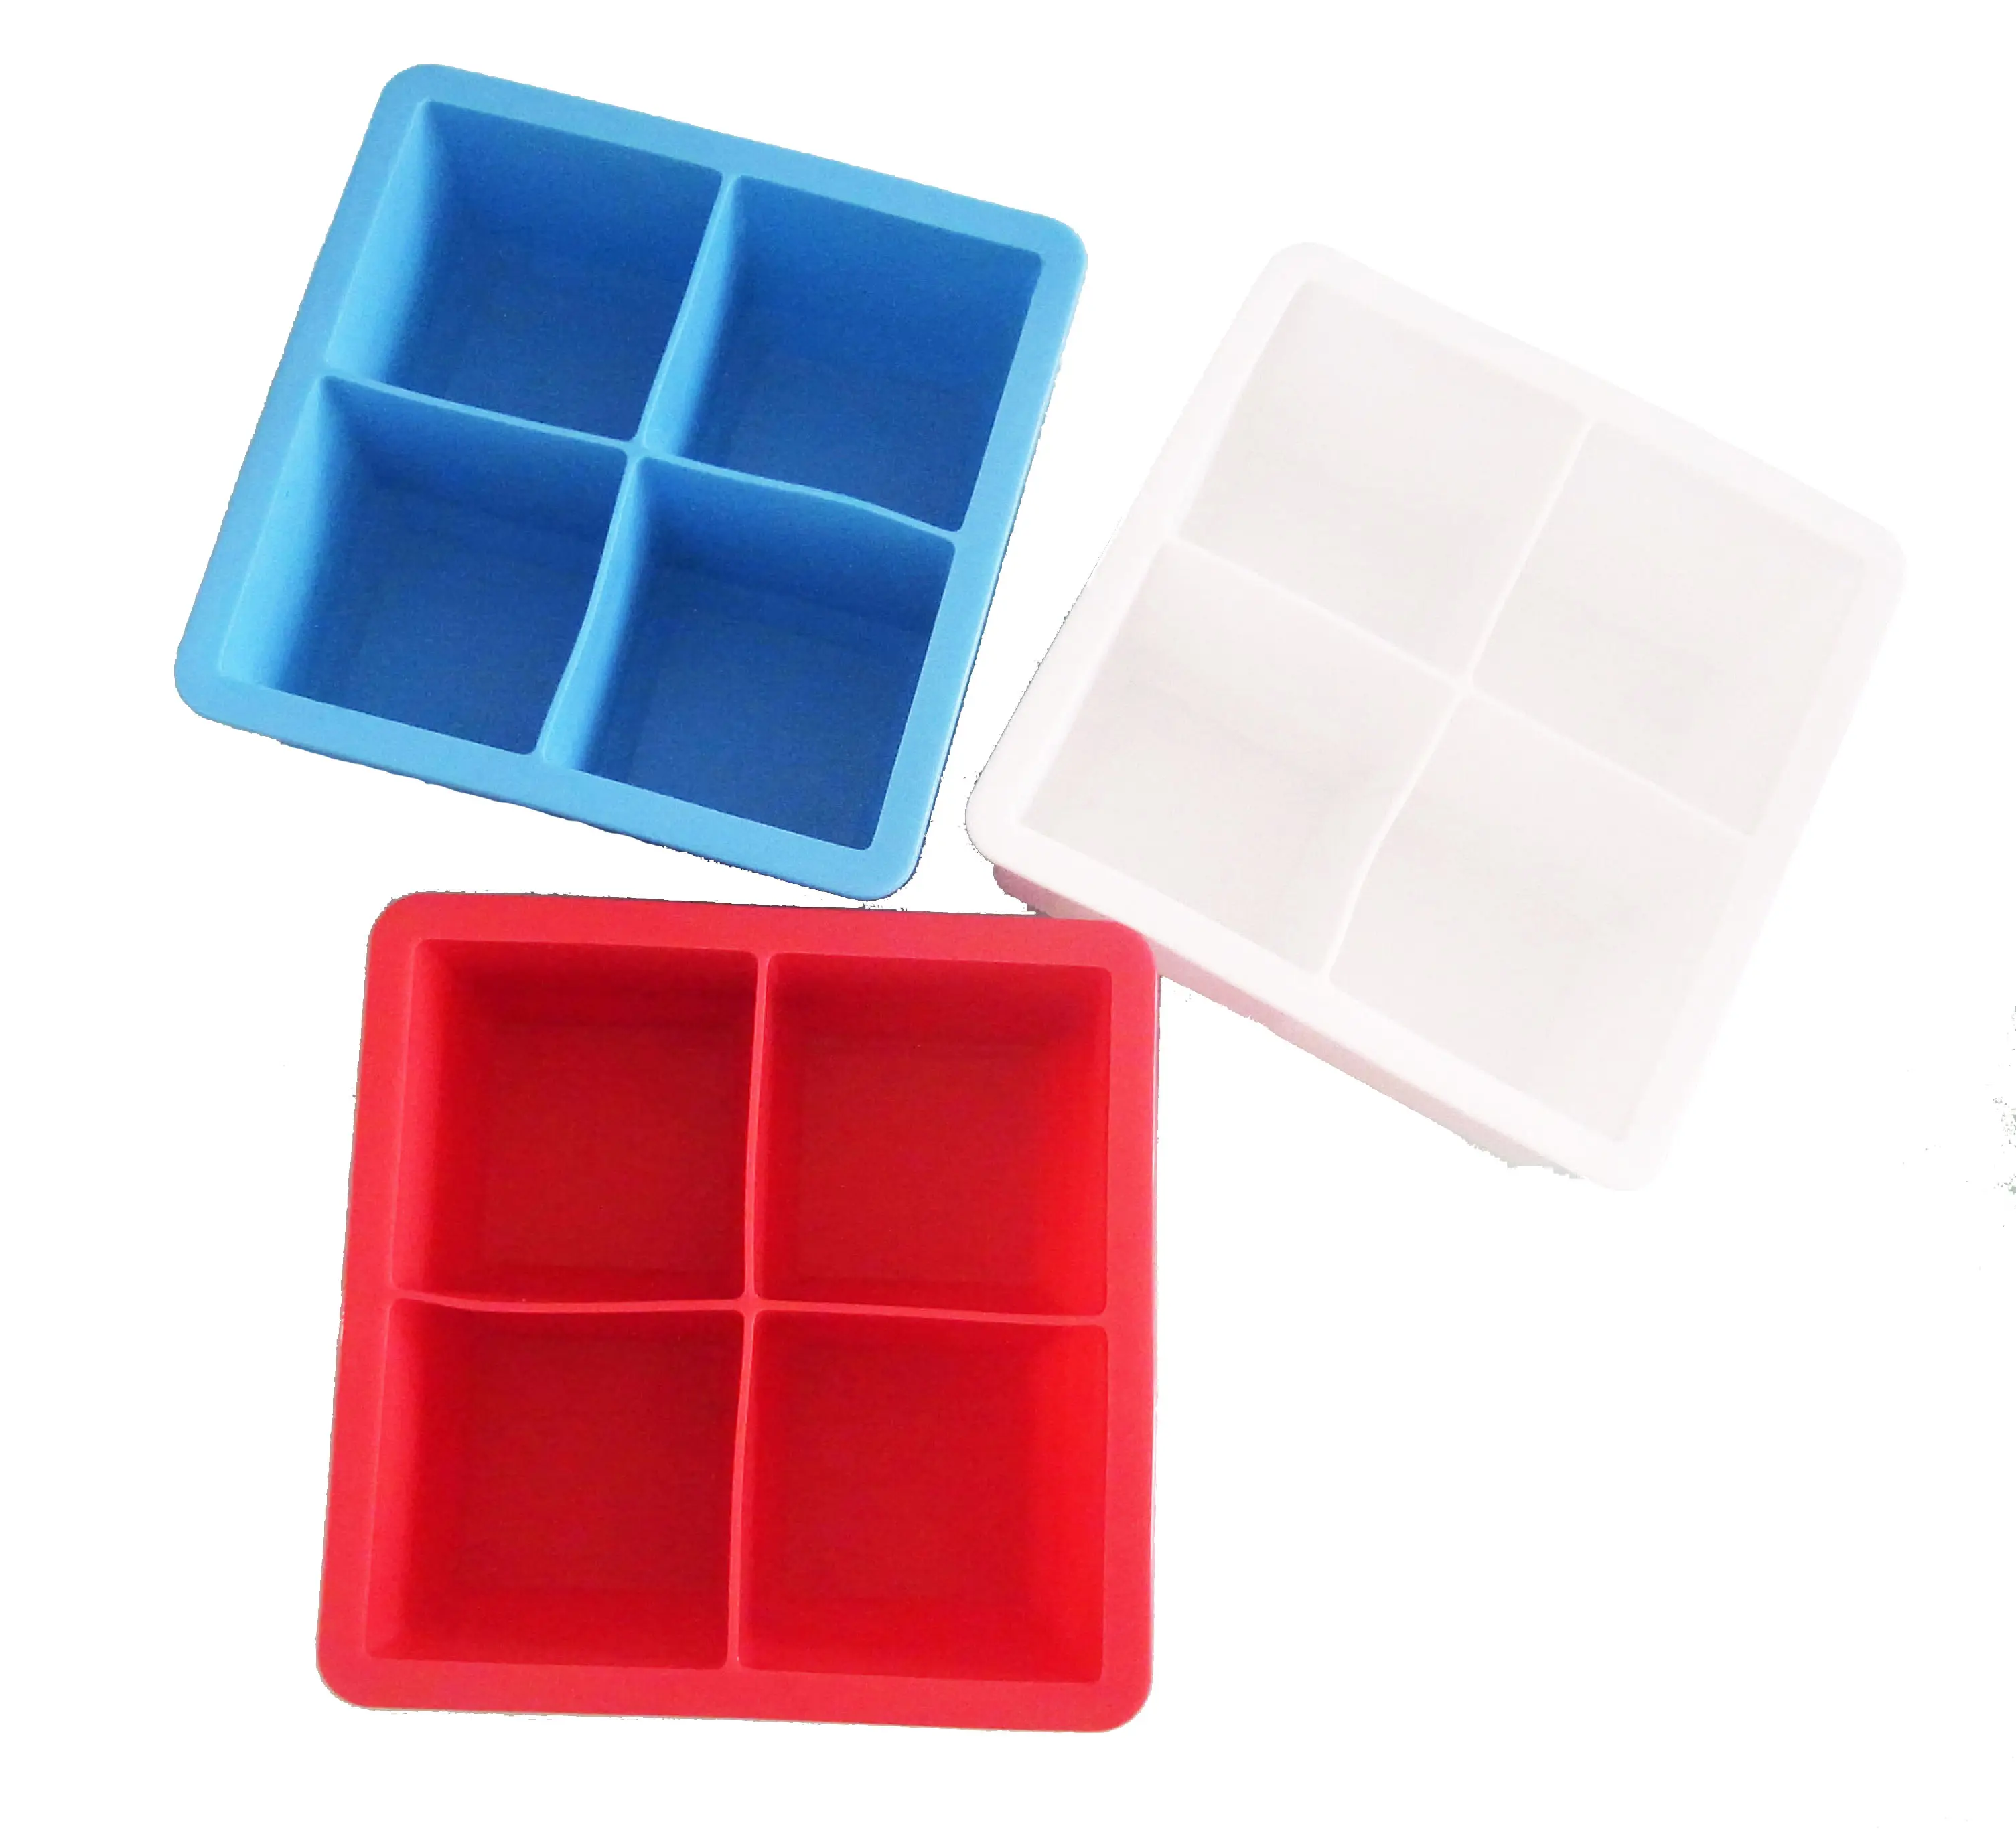 Cubitera de silicona de hielo personalizada, paquete de 2 cubos de 2,25 pulgadas, color gris, negro, blanco, azul y rojo